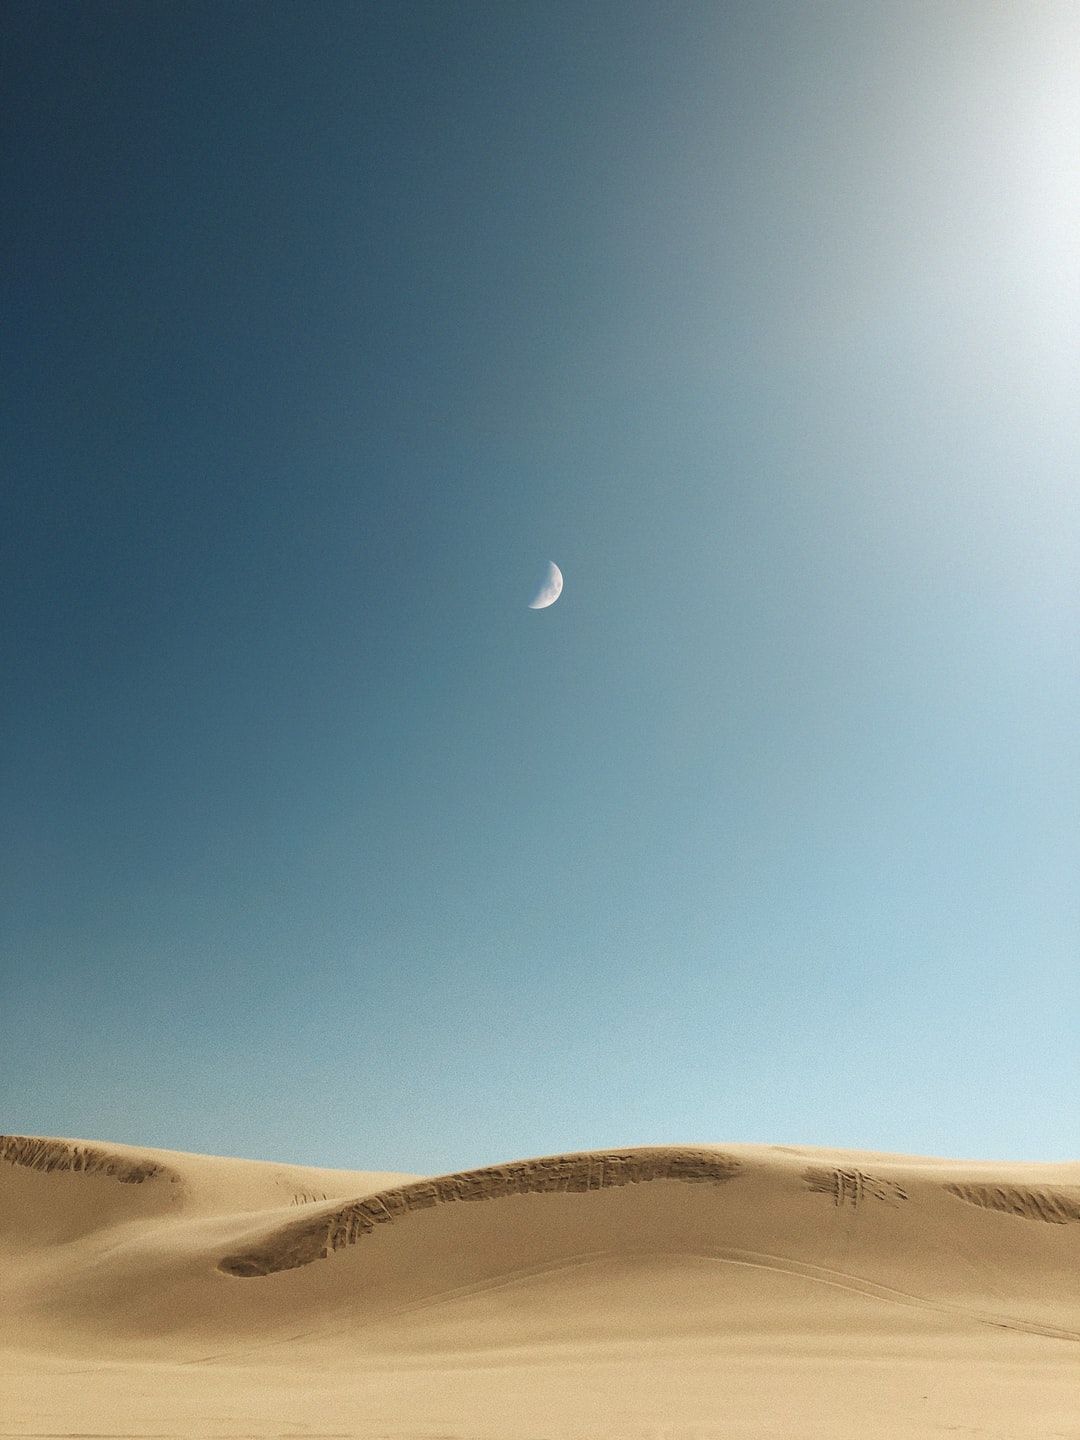 sand dunes photo – Free Nature Image